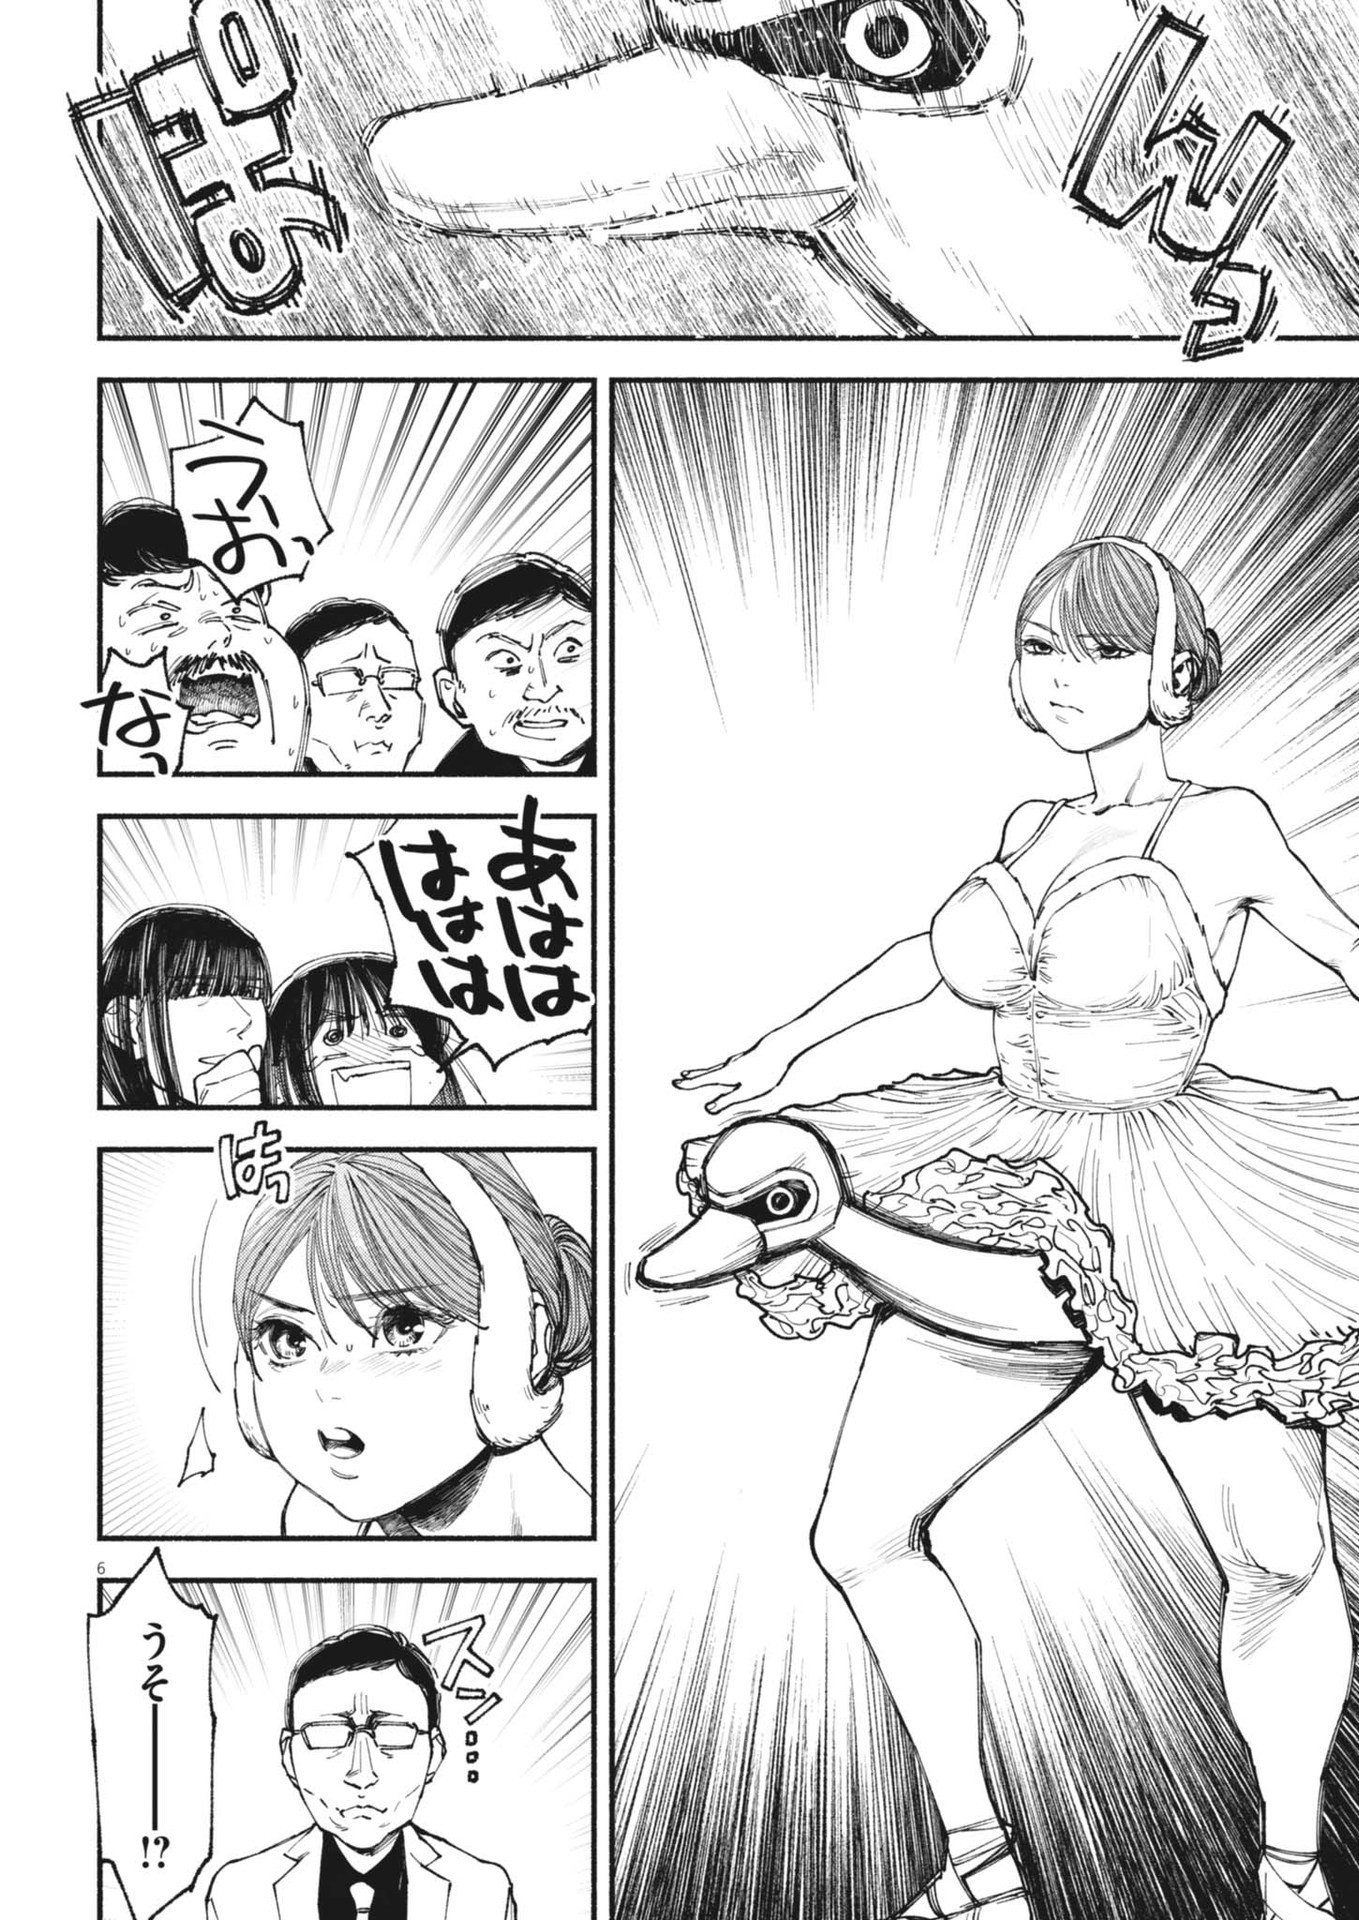 Konoyo wa Tatakau Kachi ga Aru  - Chapter 22 - Page 6